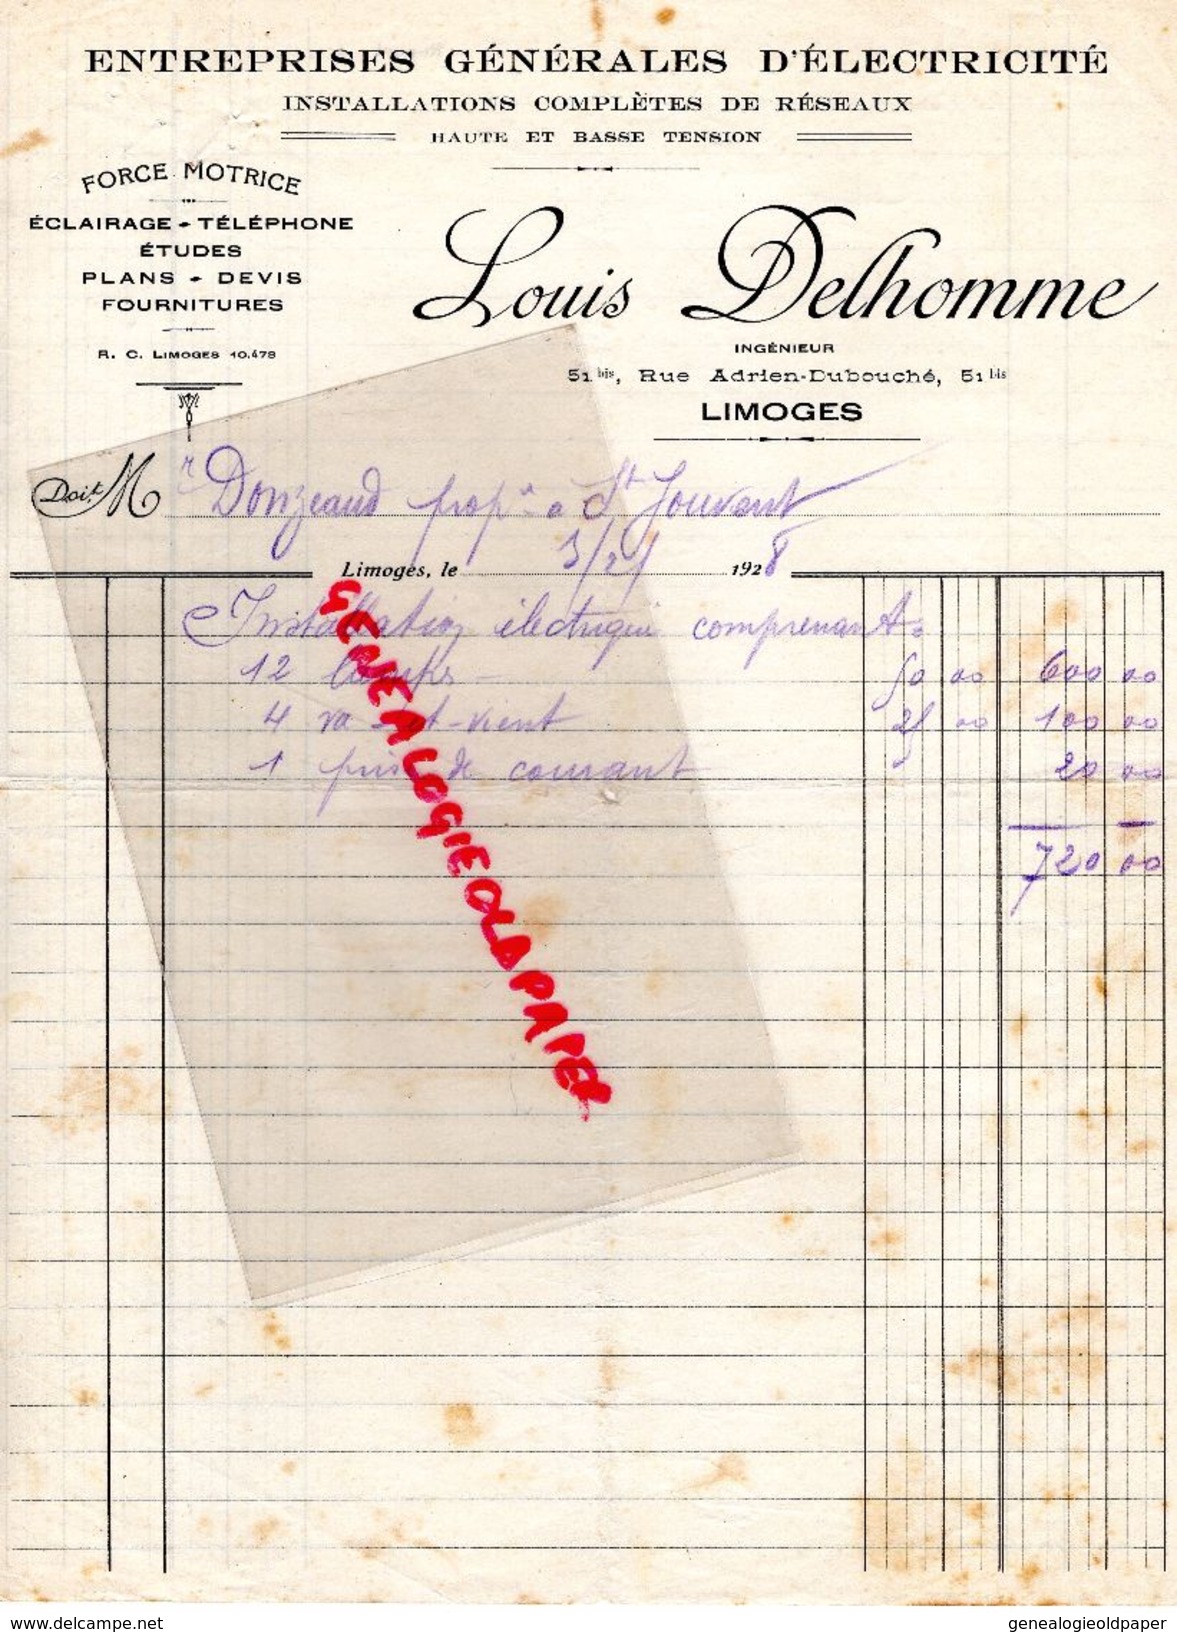 87 - LIMOGES - FACTURE LOUIS DELHOMME -INGENIEUR 51 RUE ADRIEN DUBOUCHE- ELECTRICITE FORCE MOTRICE- 1928 - Elektrizität & Gas